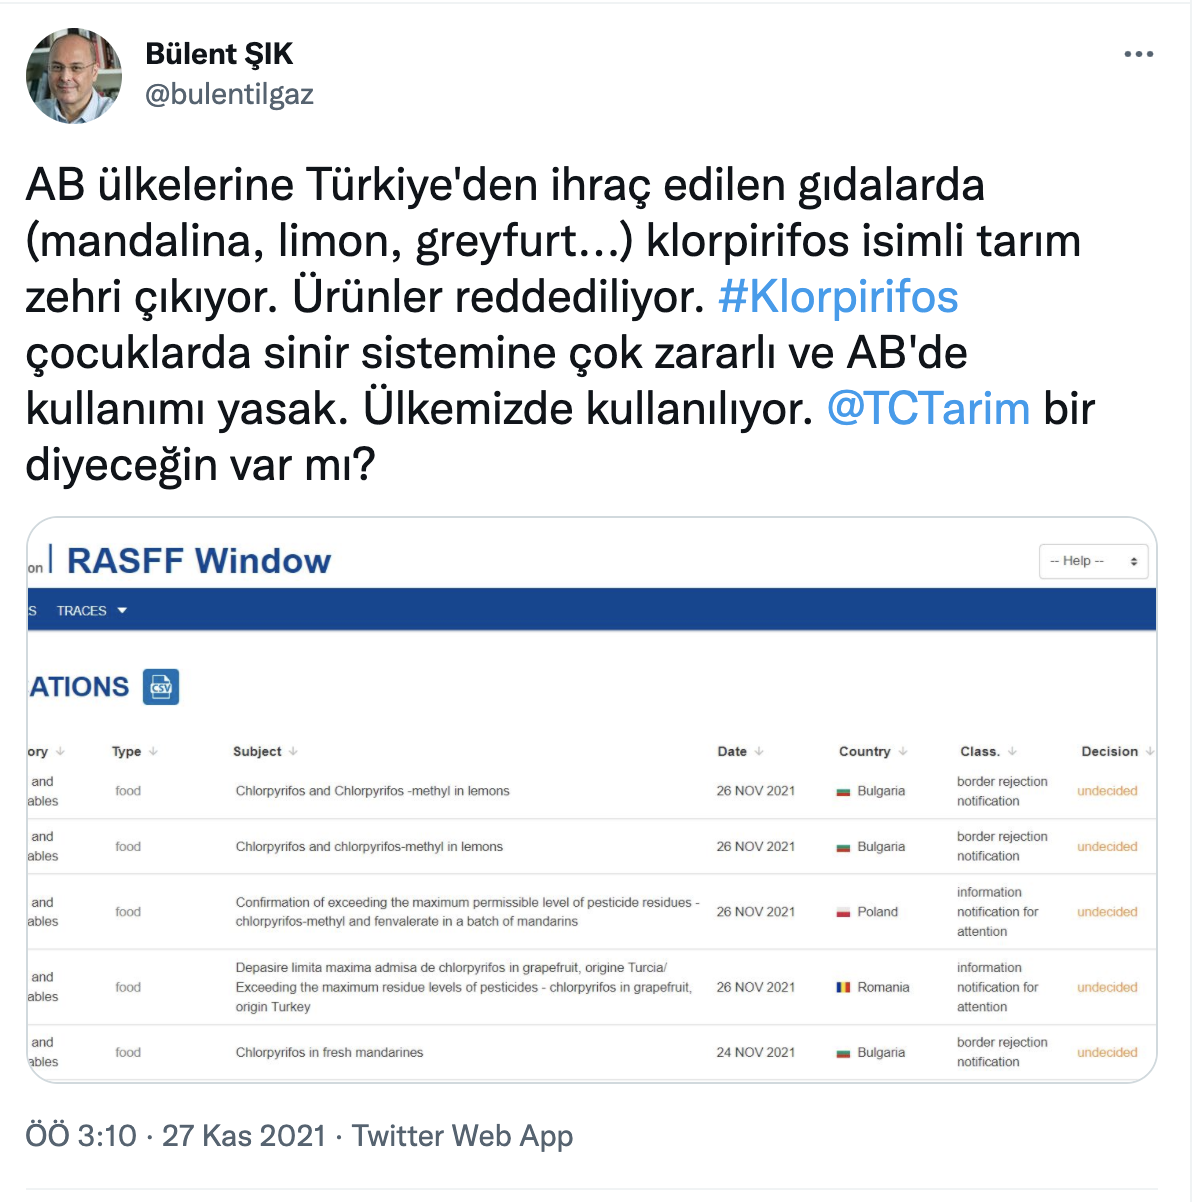 Bülent Şık: Türkiye'den AB ülkelerine ihraç edilen besinlerde klorpirifos isimli tarım zehri çıkıyor, eserler reddediliyor